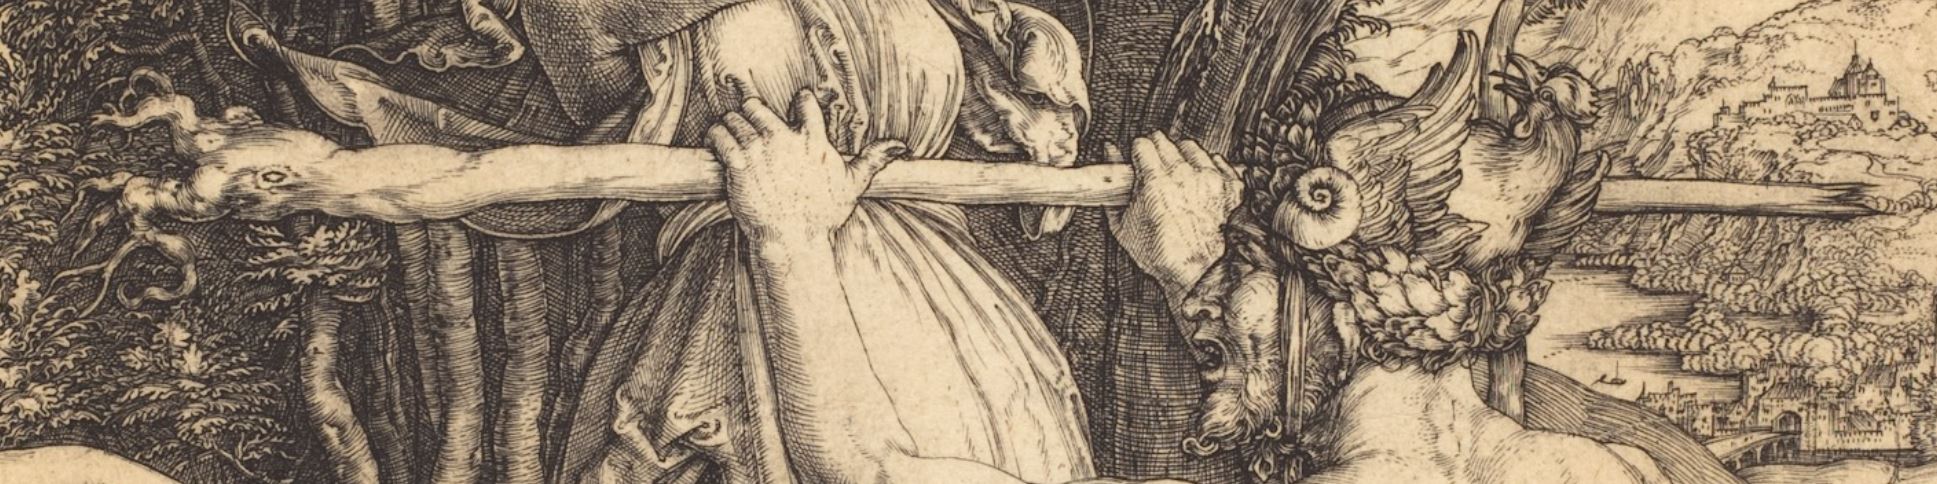 flagellation 1498-99 Albrecht_Dürer_-_Hercules NGA detail mains